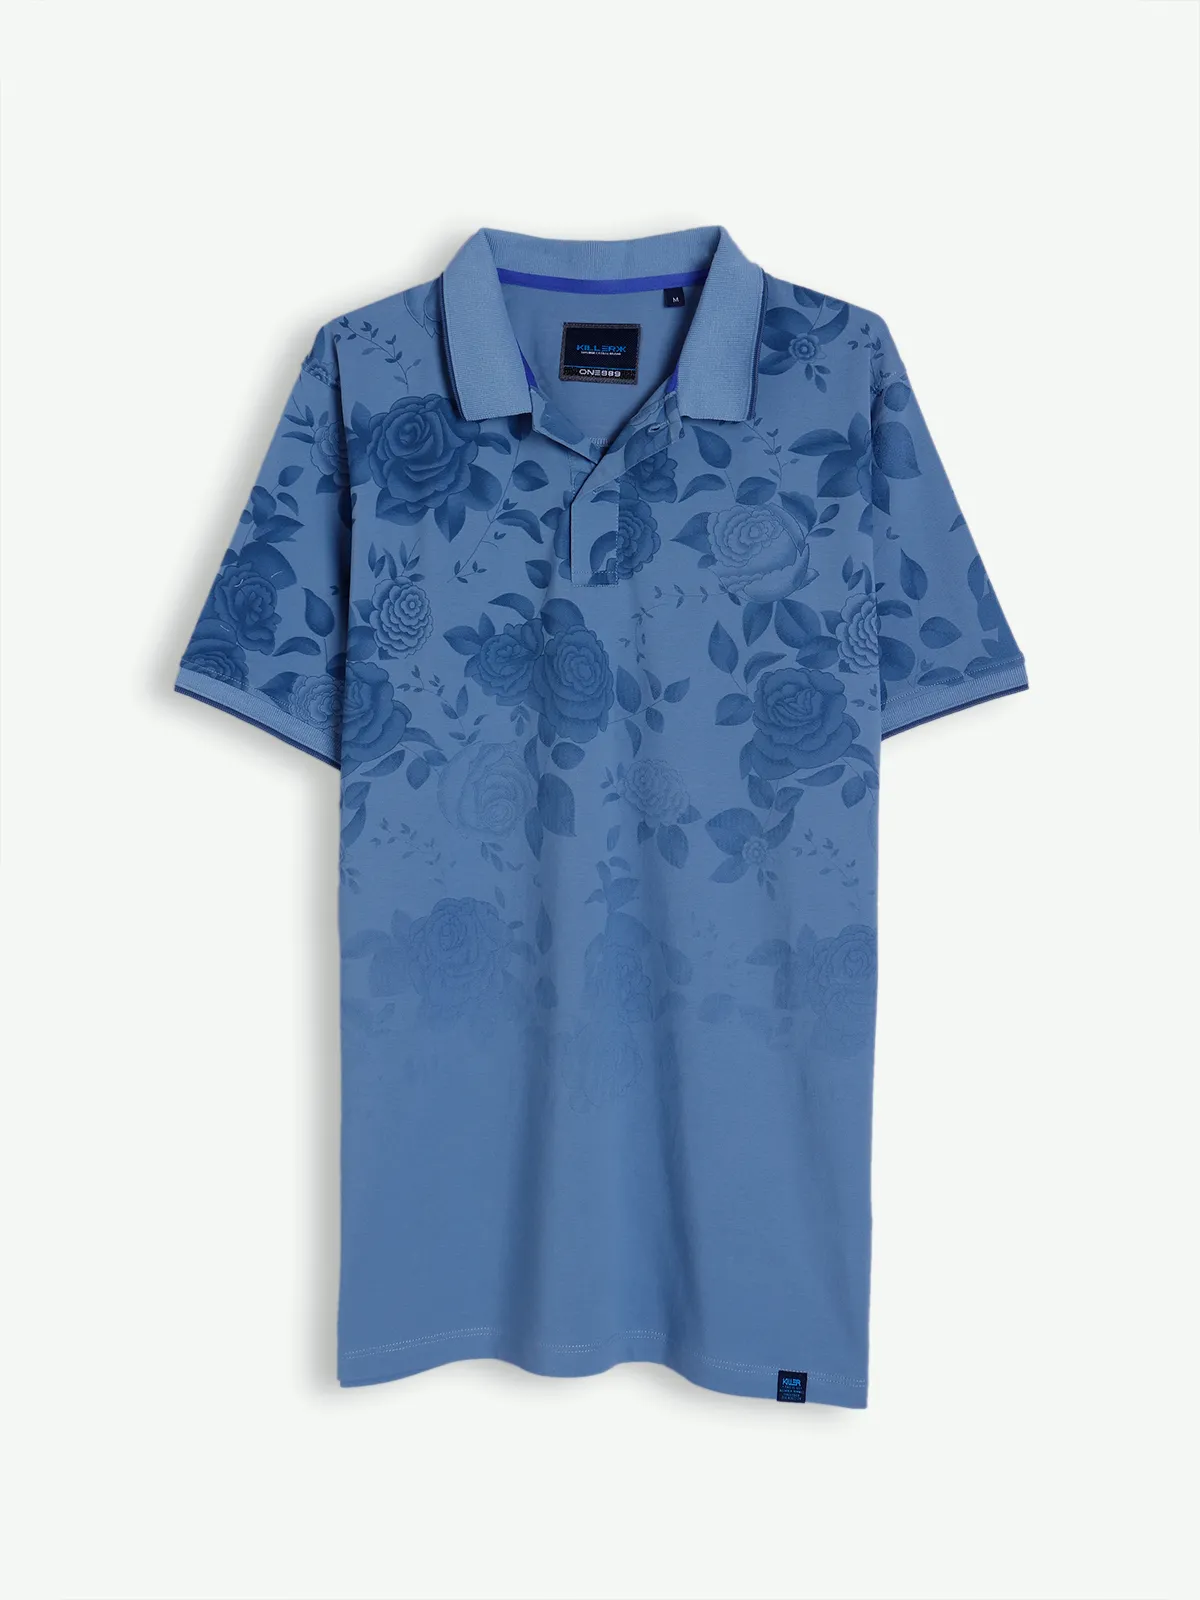 Killer sky blue printed slim fit t shirt